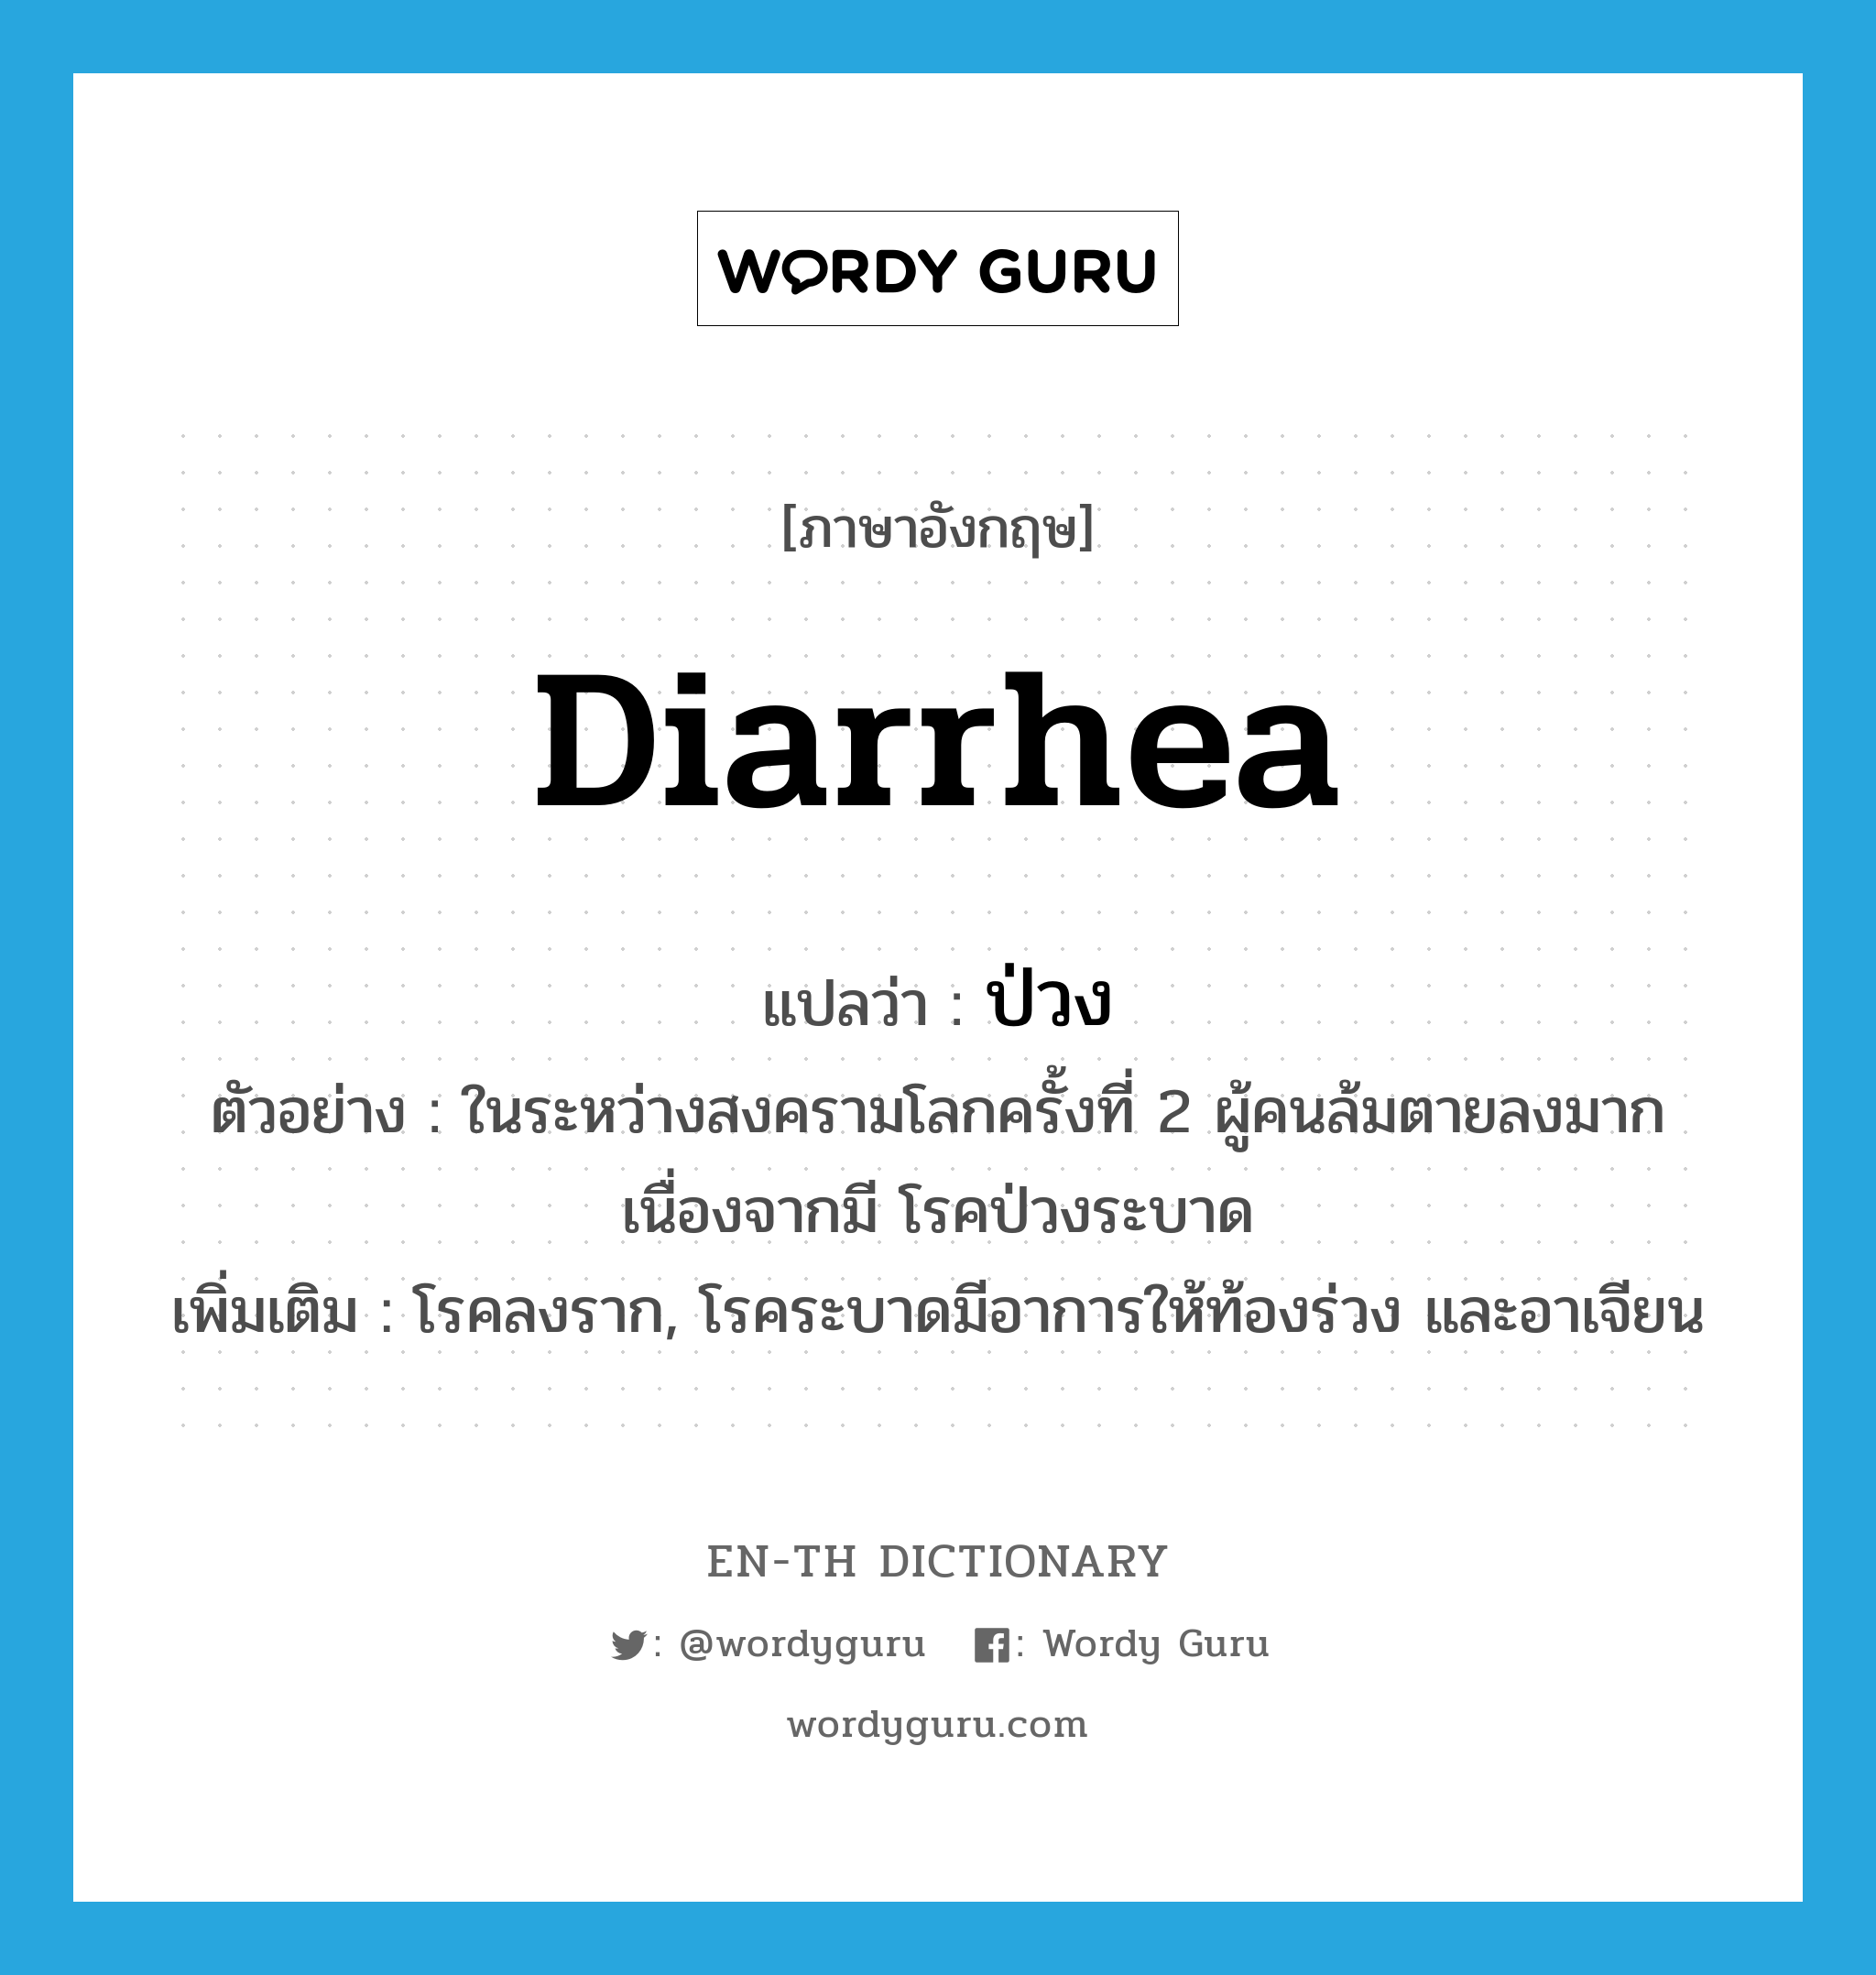 diarrhea แปลว่า?, คำศัพท์ภาษาอังกฤษ diarrhea แปลว่า ป่วง ประเภท N ตัวอย่าง ในระหว่างสงครามโลกครั้งที่ 2 ผู้คนล้มตายลงมากเนื่องจากมี โรคป่วงระบาด เพิ่มเติม โรคลงราก, โรคระบาดมีอาการให้ท้องร่วง และอาเจียน หมวด N